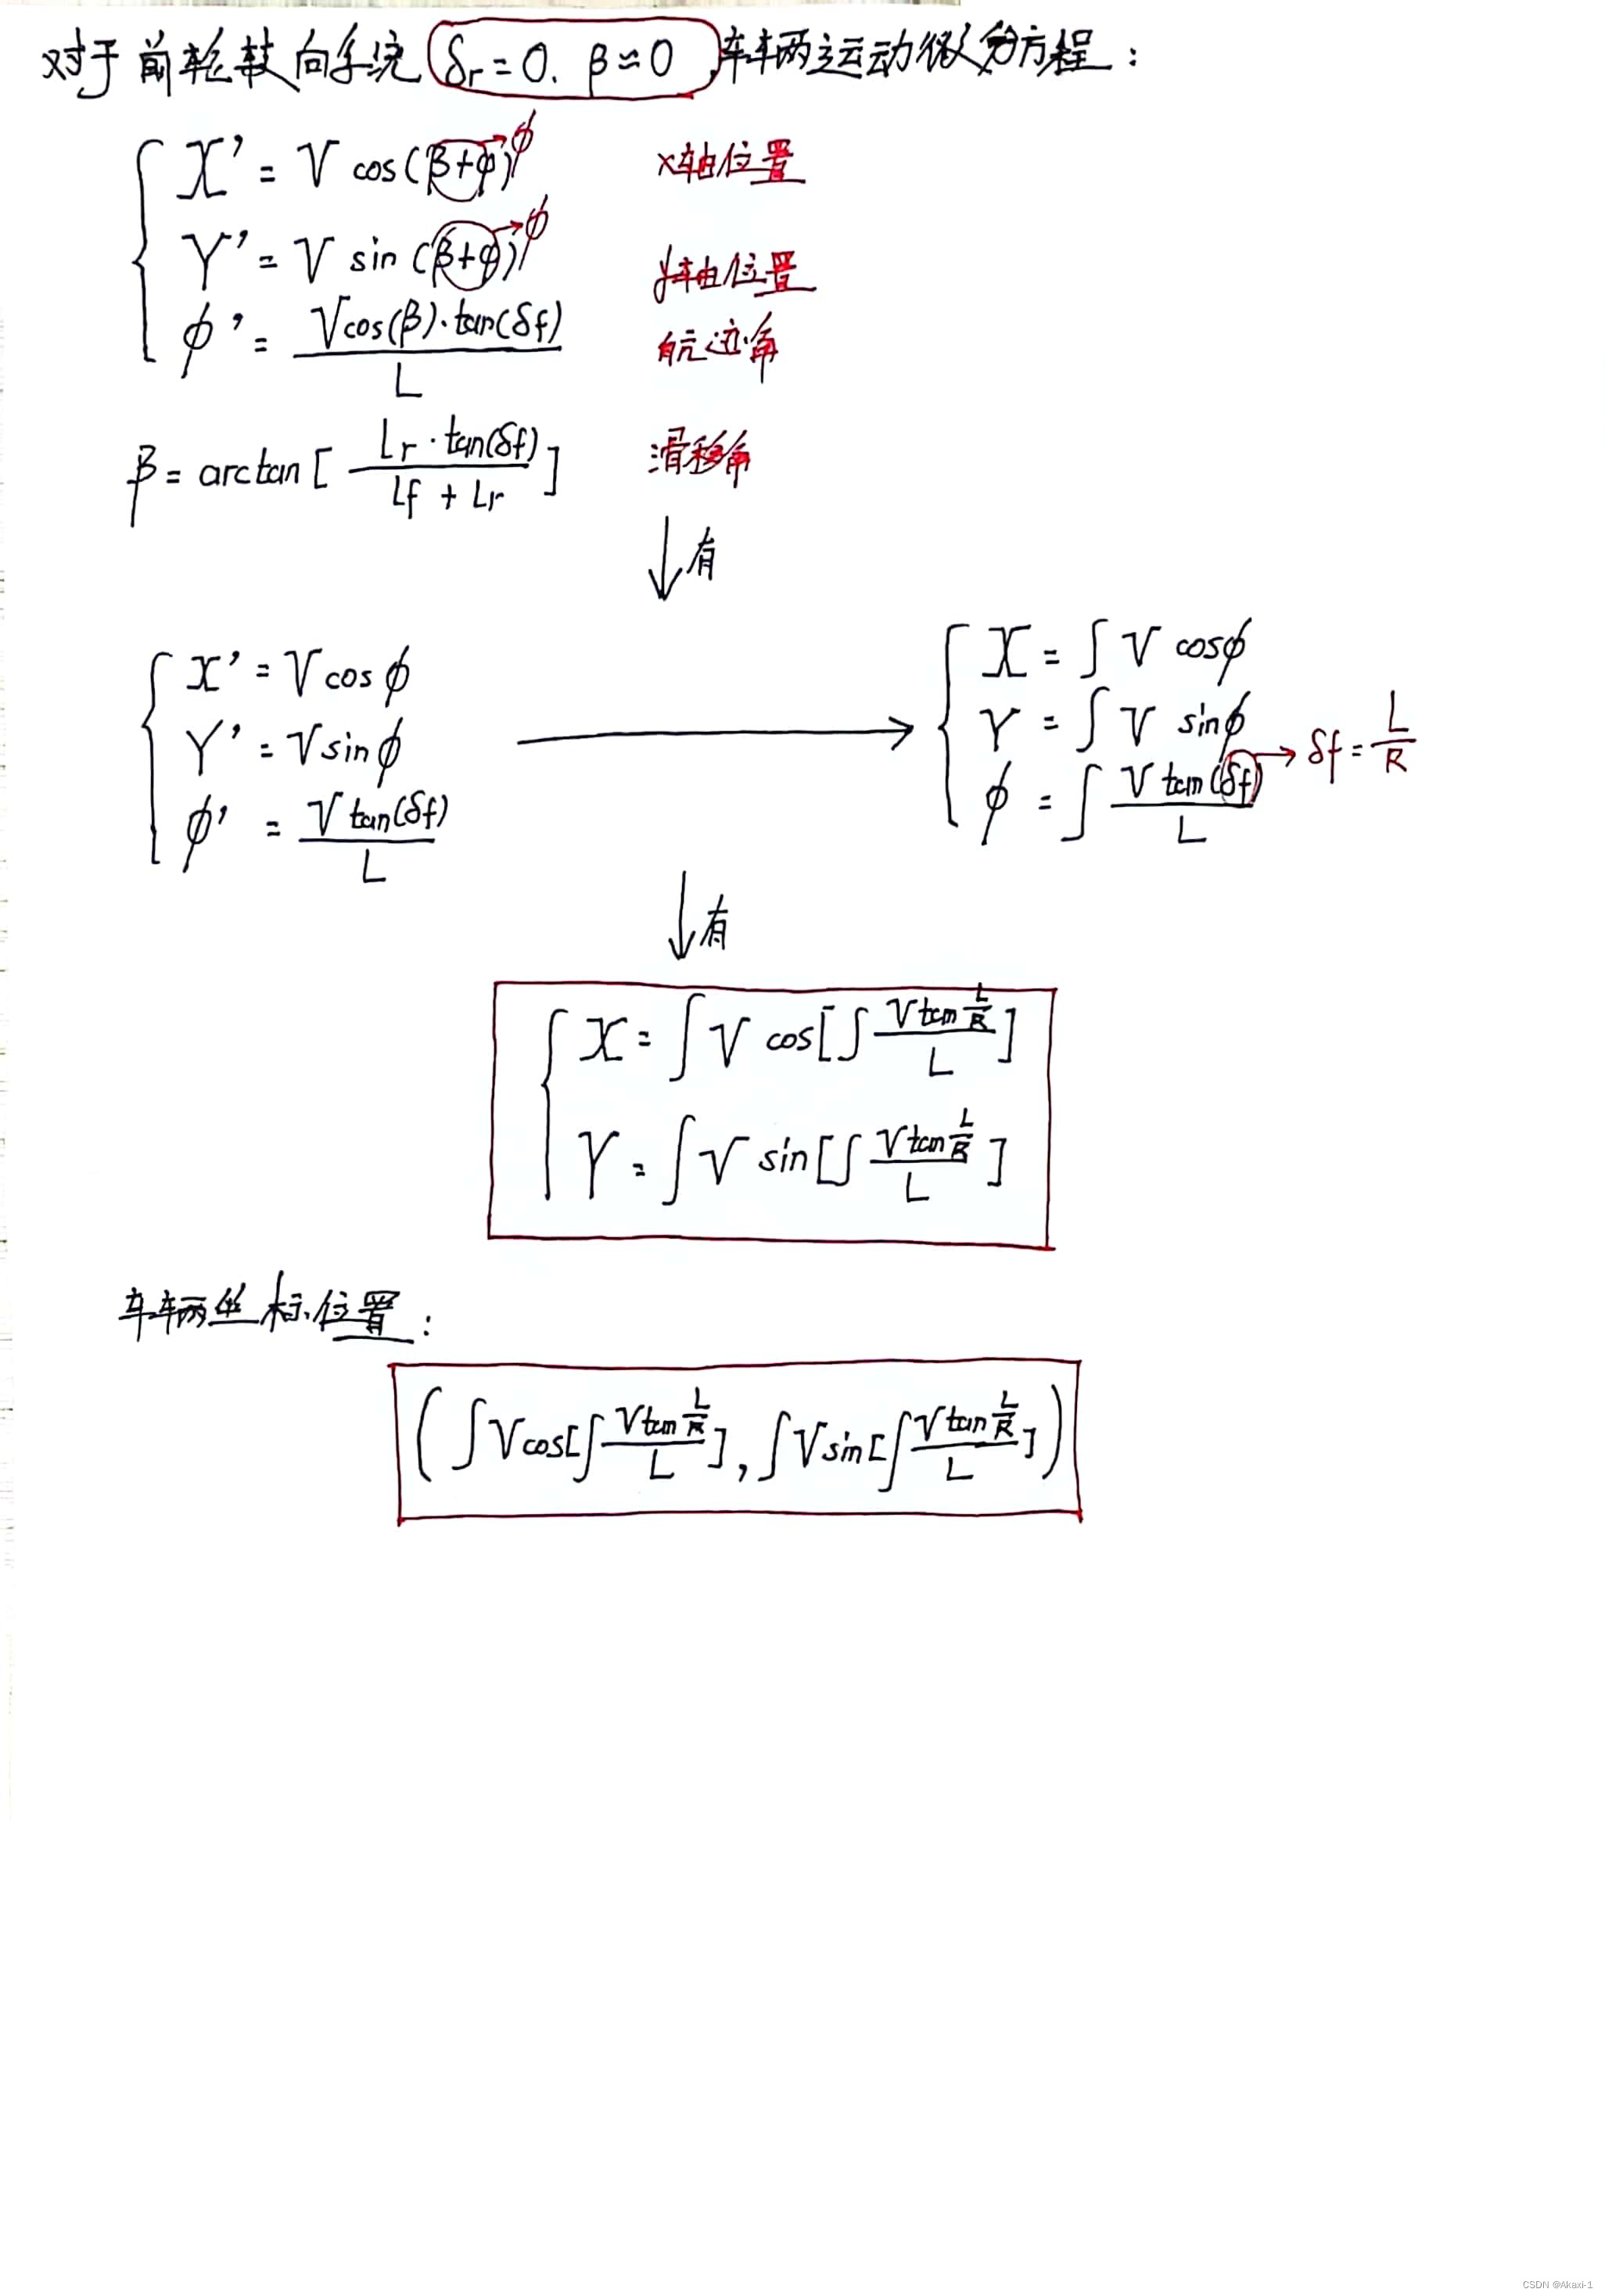 【自动驾驶车辆-运动控制】运动学模型(Kinematic Model) | 手写数学推导公式 by.Akaxi